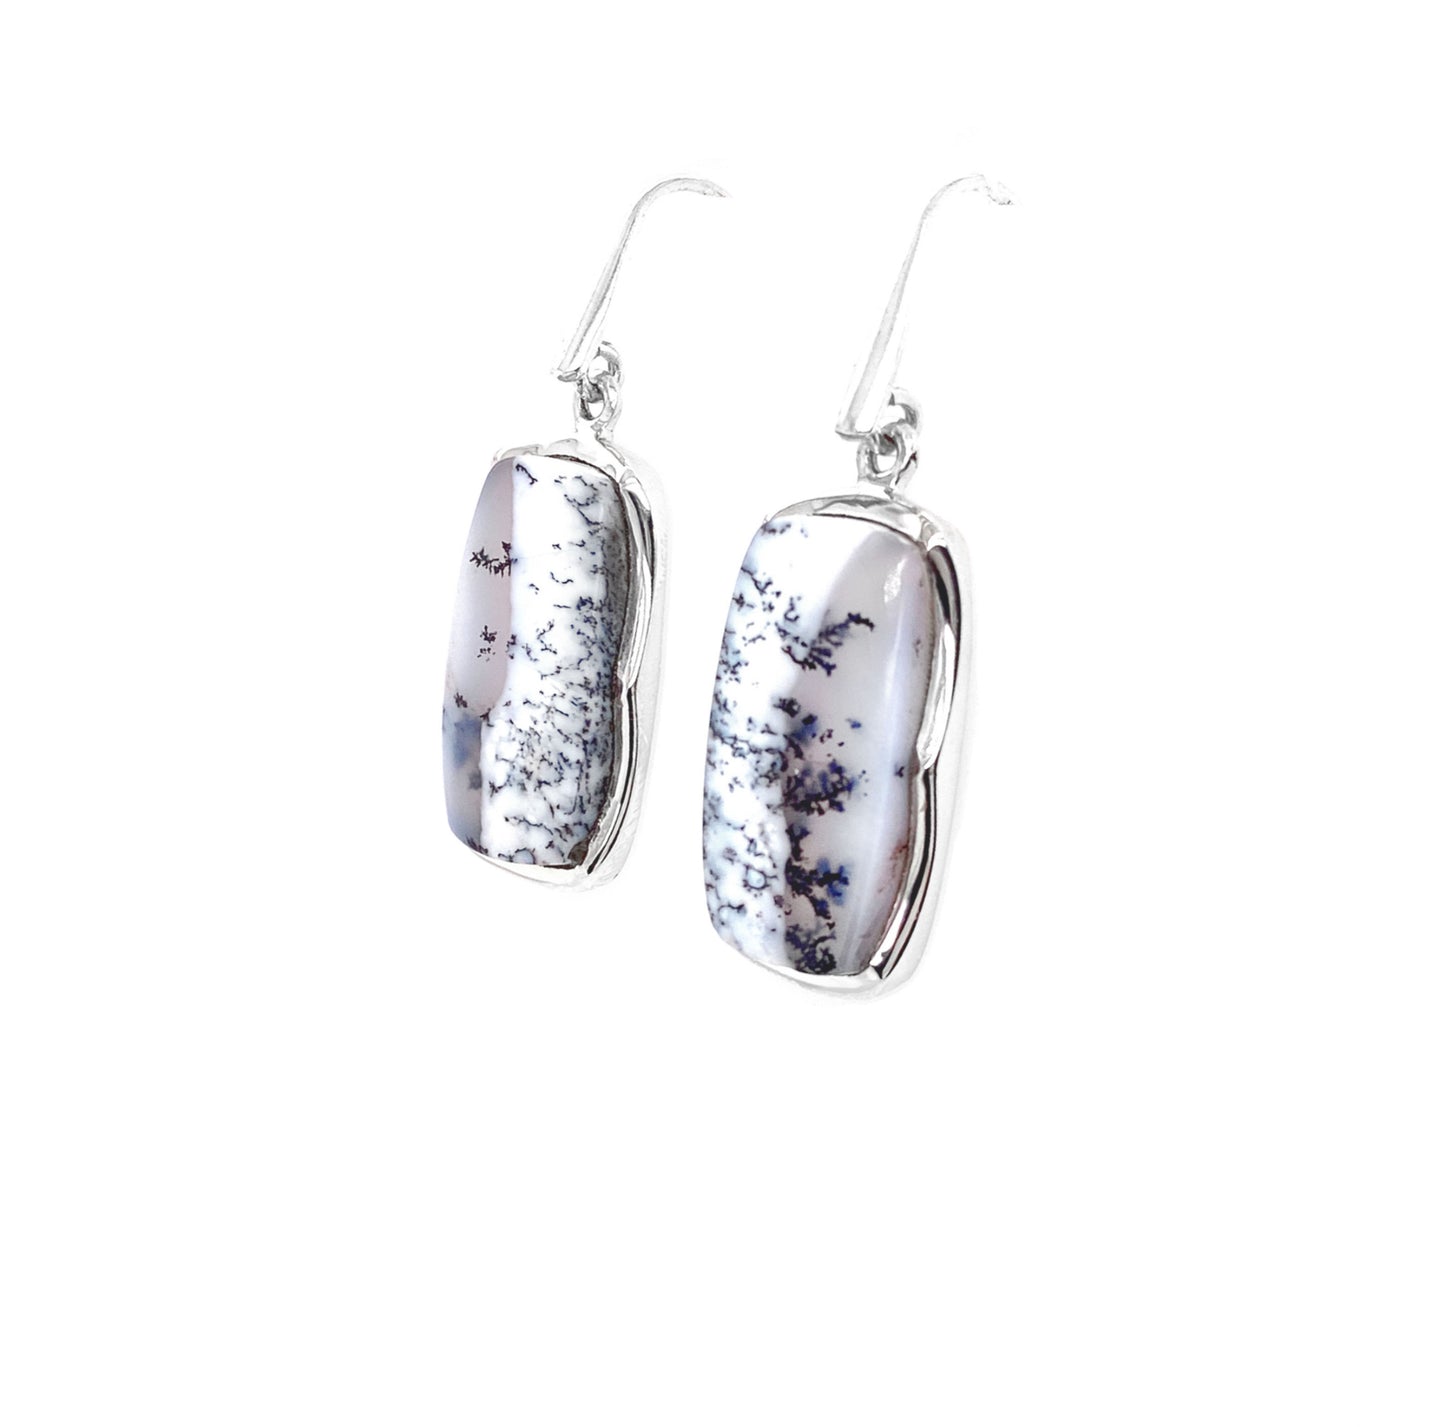 Dendritic Opal Earrings Sterling Silver - Dangle Earrings